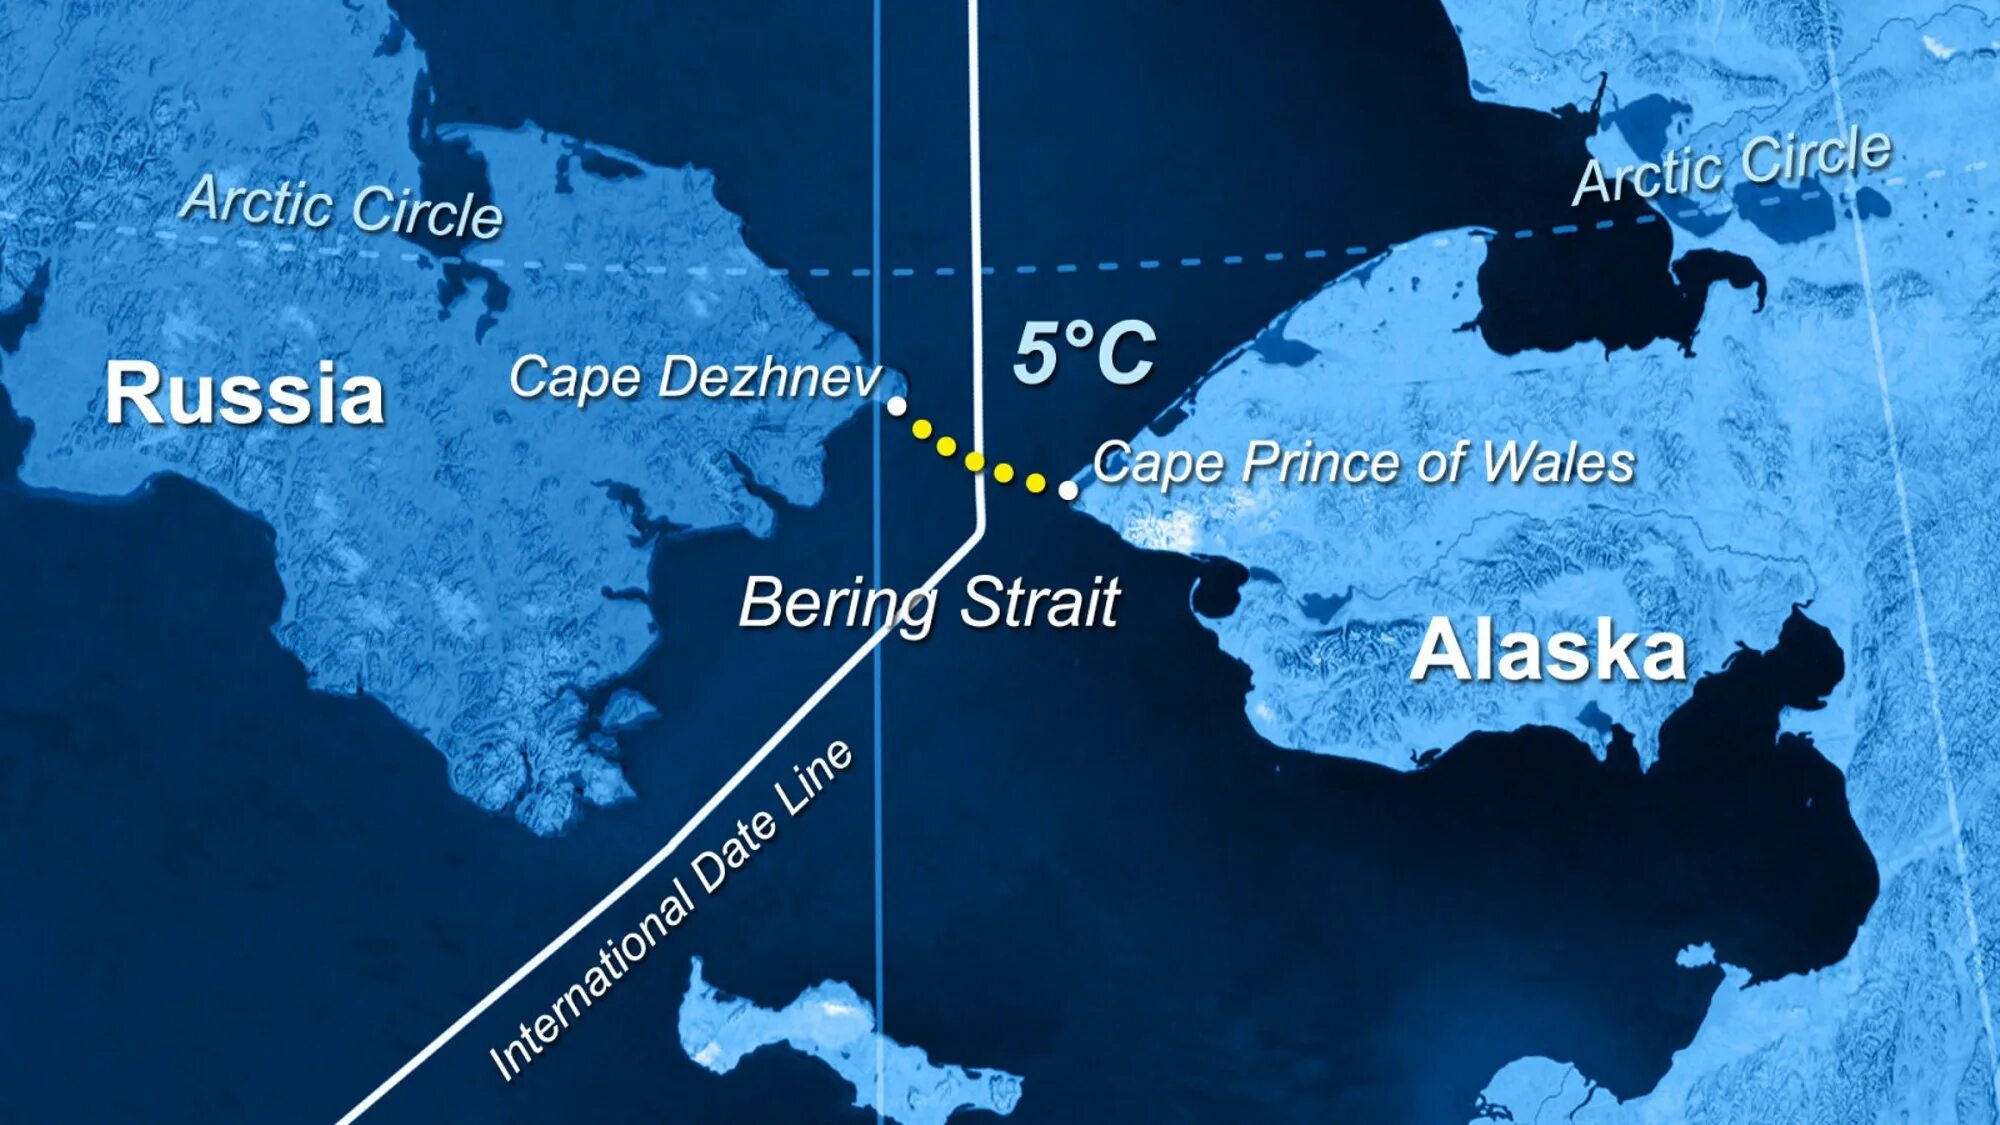 Найти на карте берингов пролив. Чукотка и Аляска на карте. Карта Беренгов пролив ИАЛЯСКА. Аляска Берингов пролив. Карта Берингова пролива и Аляски.